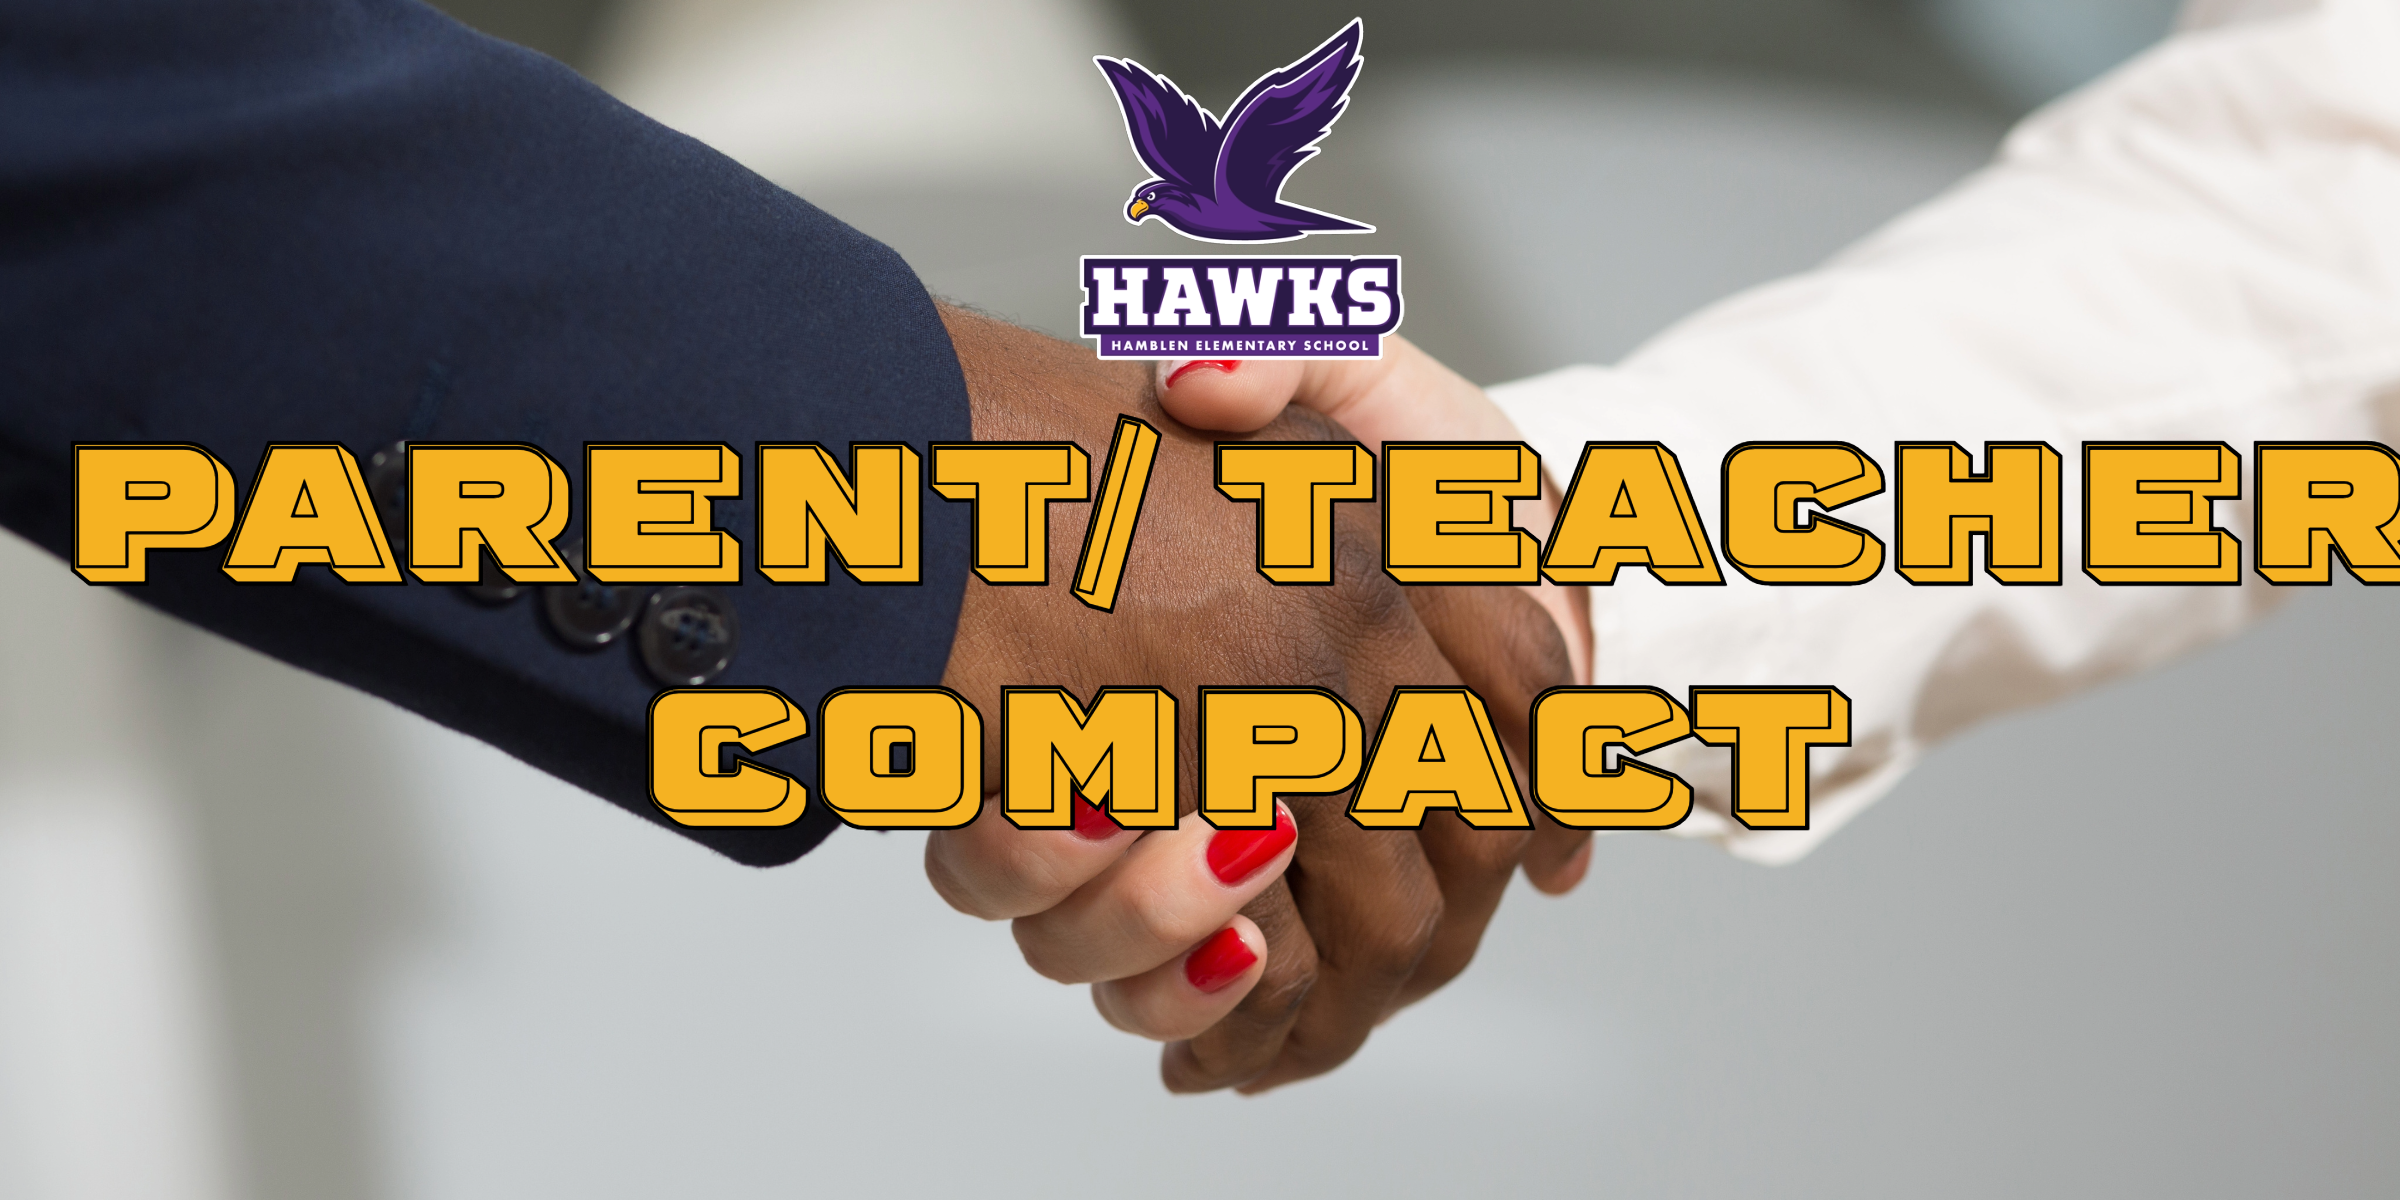 Hands shaking- Text Reads: "Parent/Teacher Compact